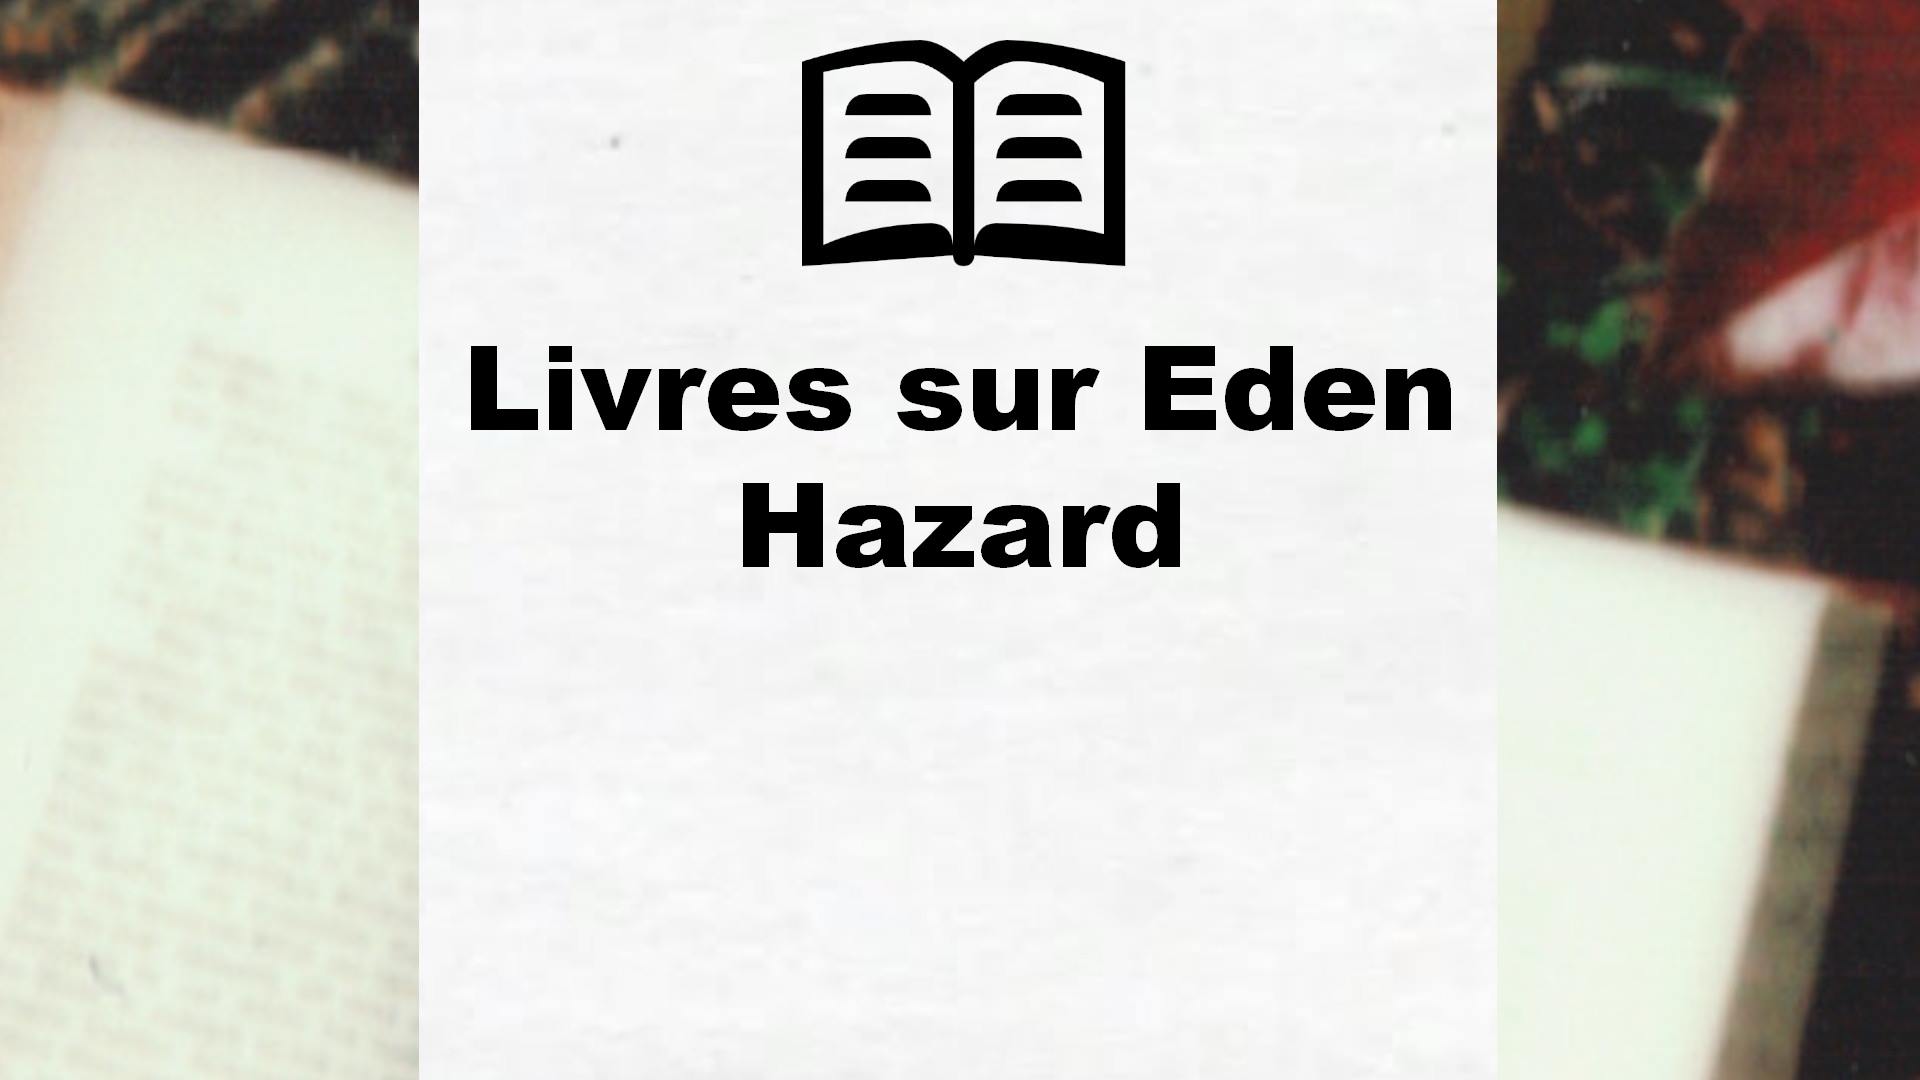 Livres sur Eden Hazard